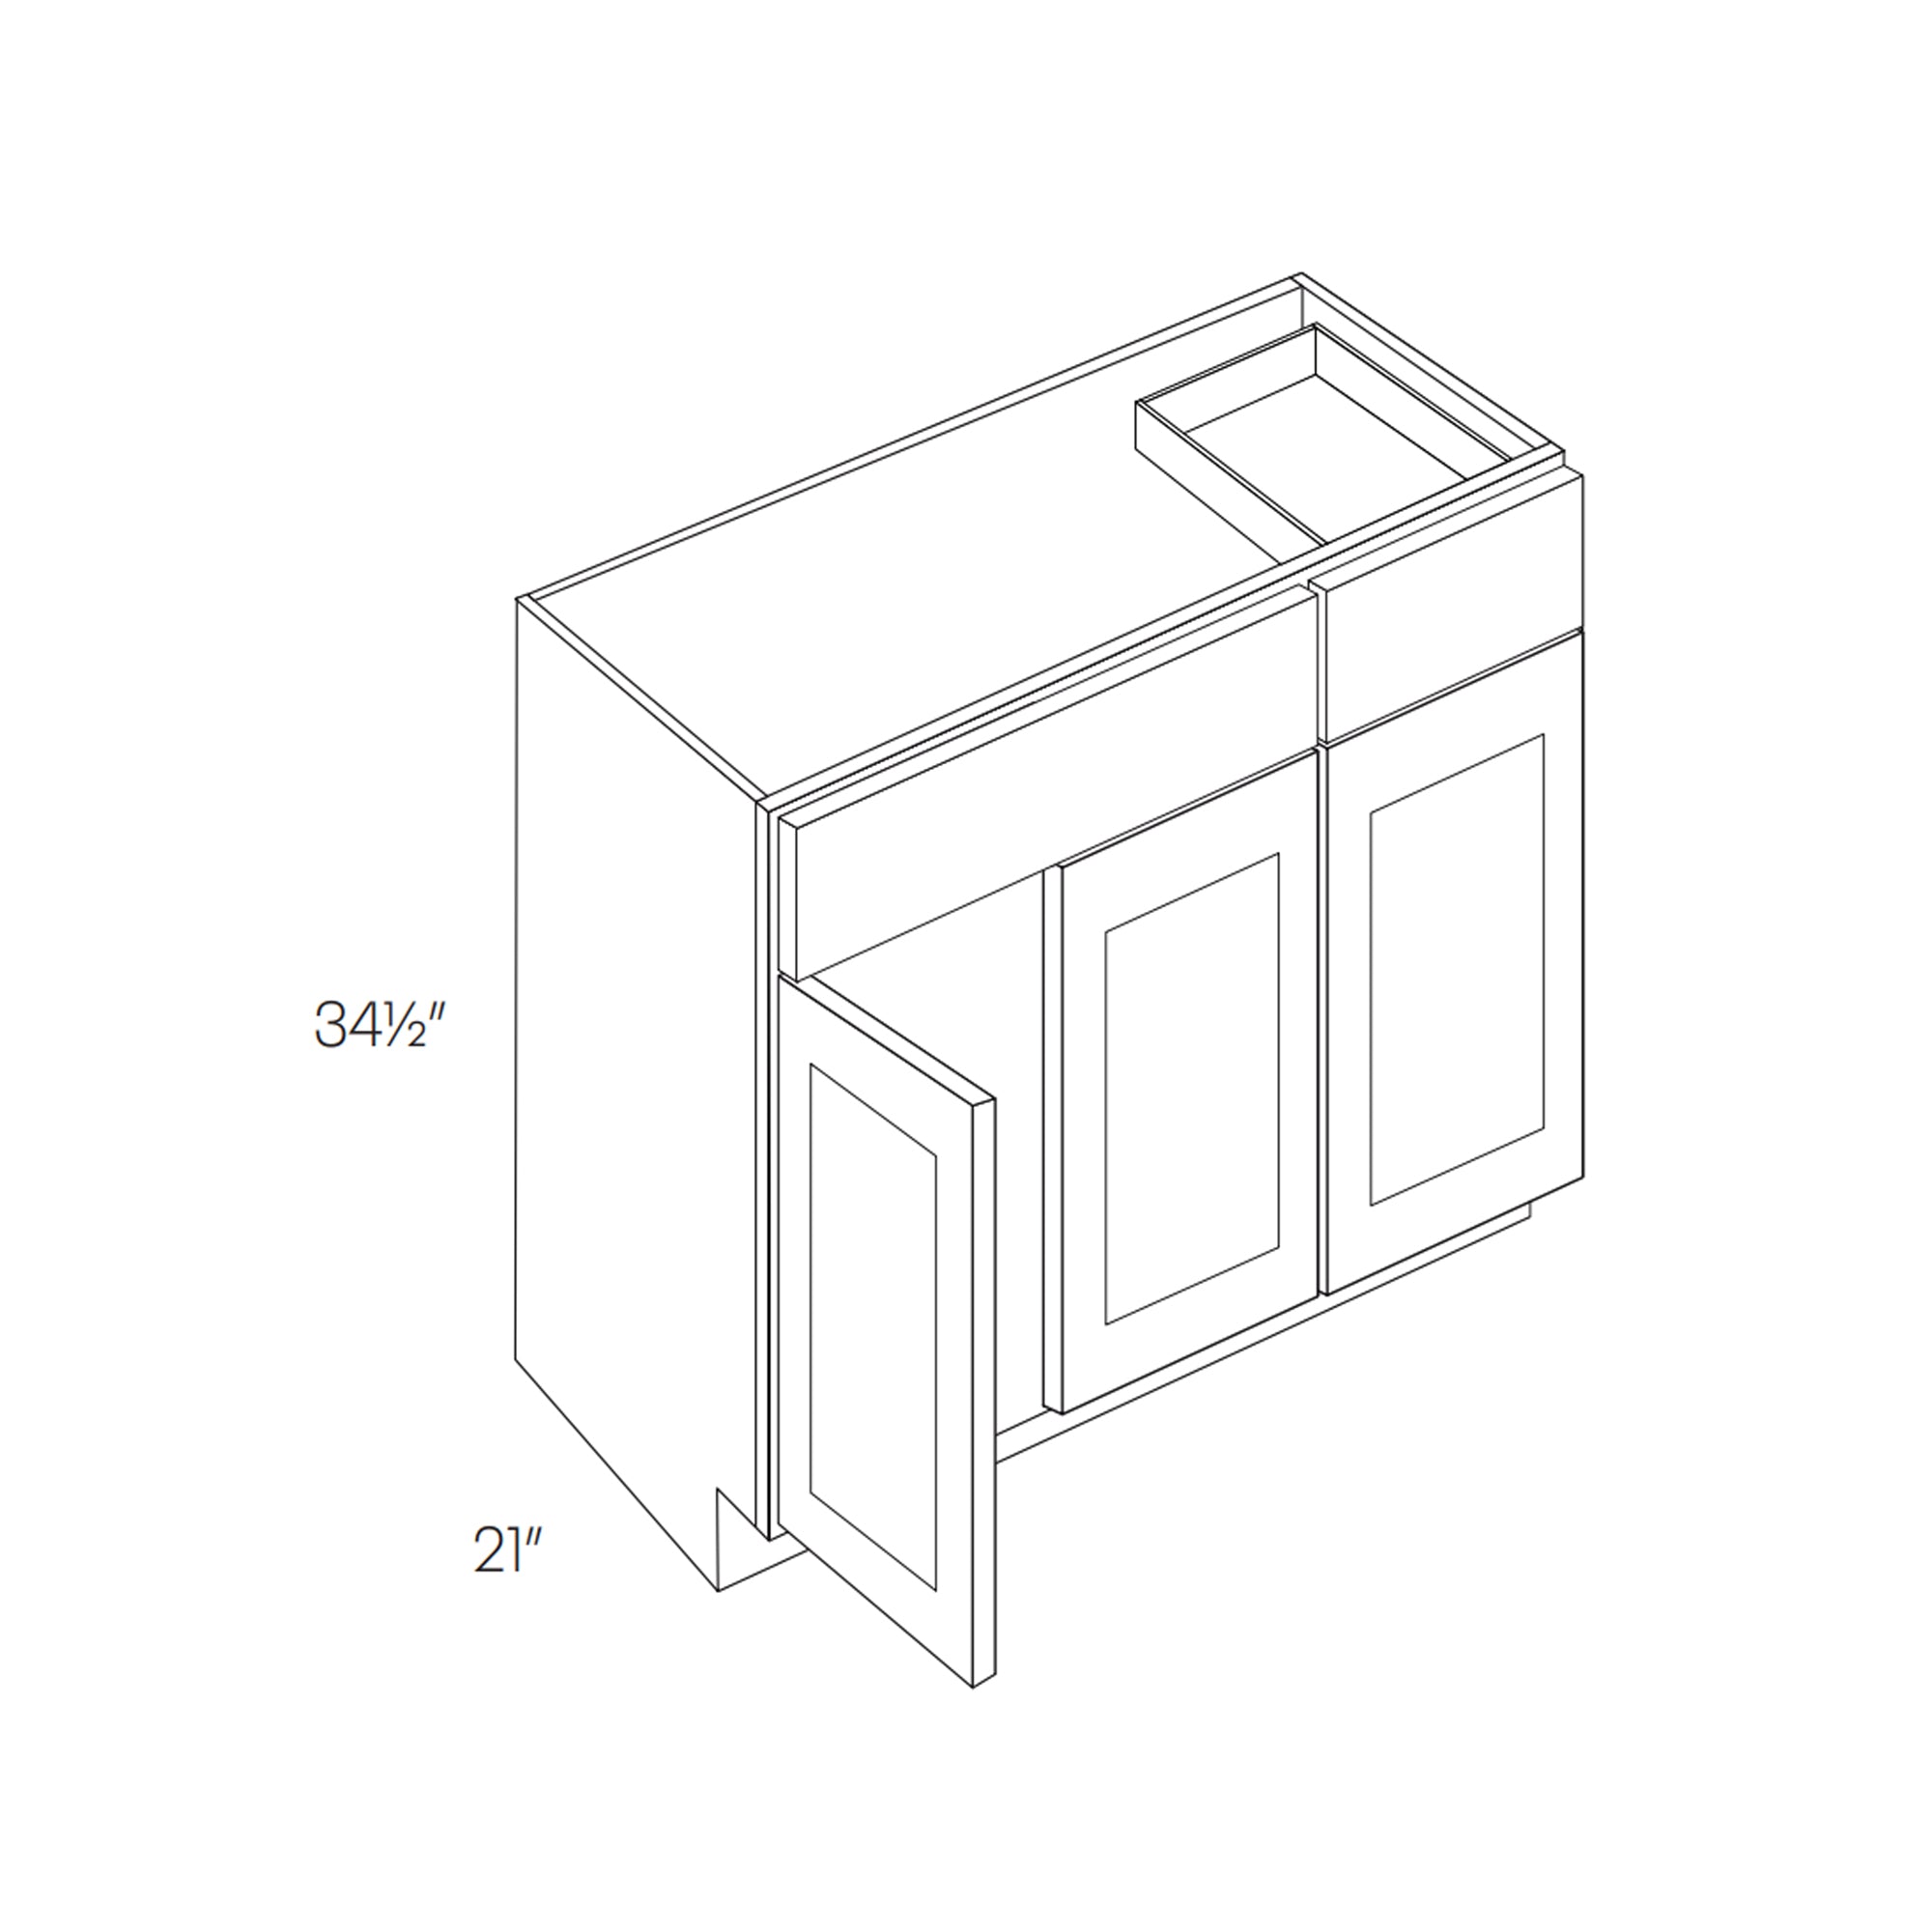 Luxor Misty Grey - Single Door Base Vanity Cabinet | 42"W x 34.5"H x 21"D